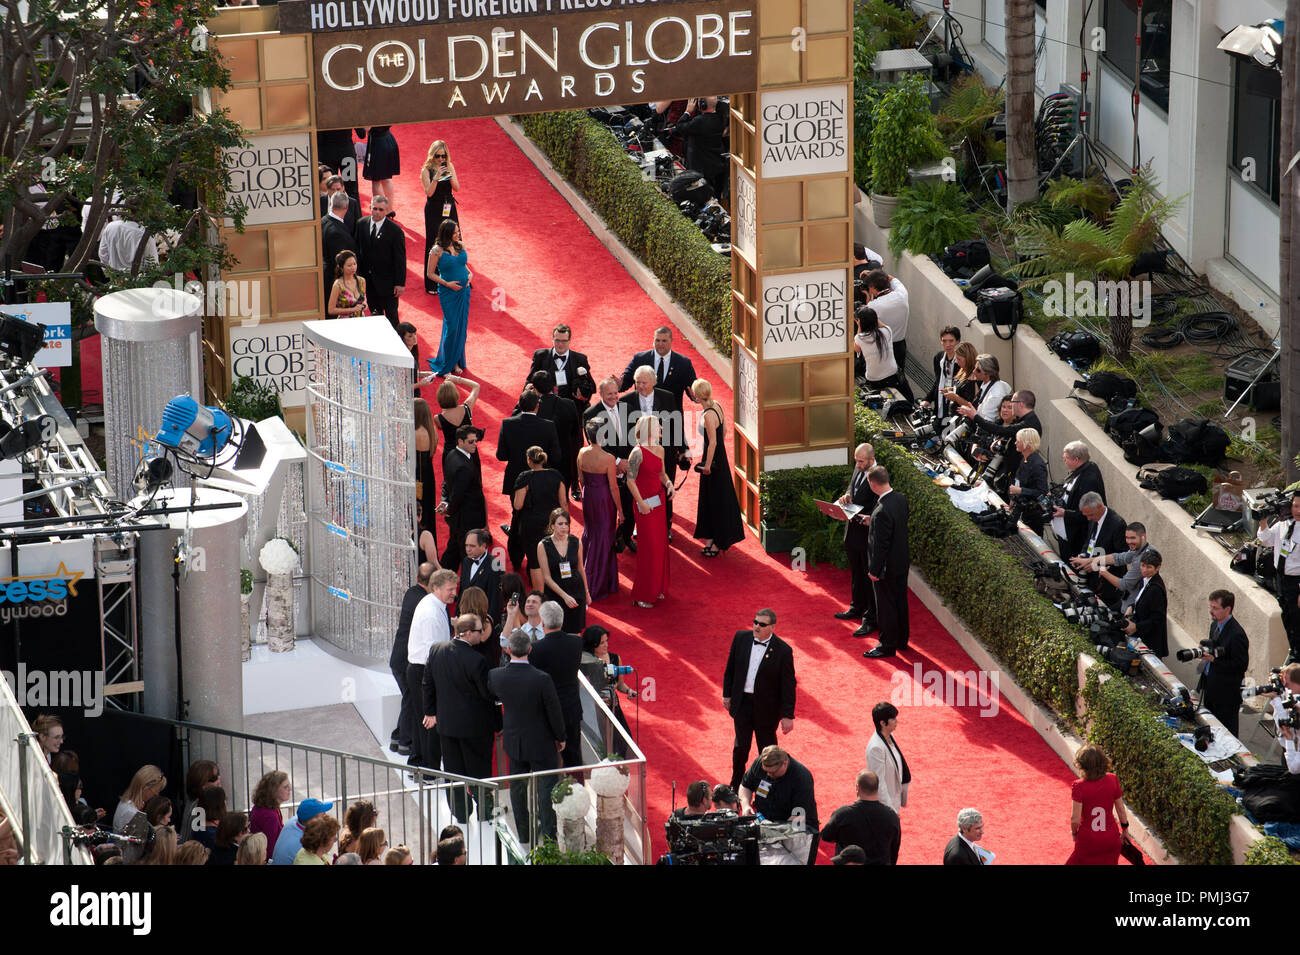 Las celebridades llegan a la 68ª conferencia anual de los Golden Globe Awards en el Beverly Hilton de Beverly Hills, CA el domingo, 16 de enero de 2011. Archivo de referencia # 30825 621 para uso editorial sólo - Todos los derechos reservados Foto de stock